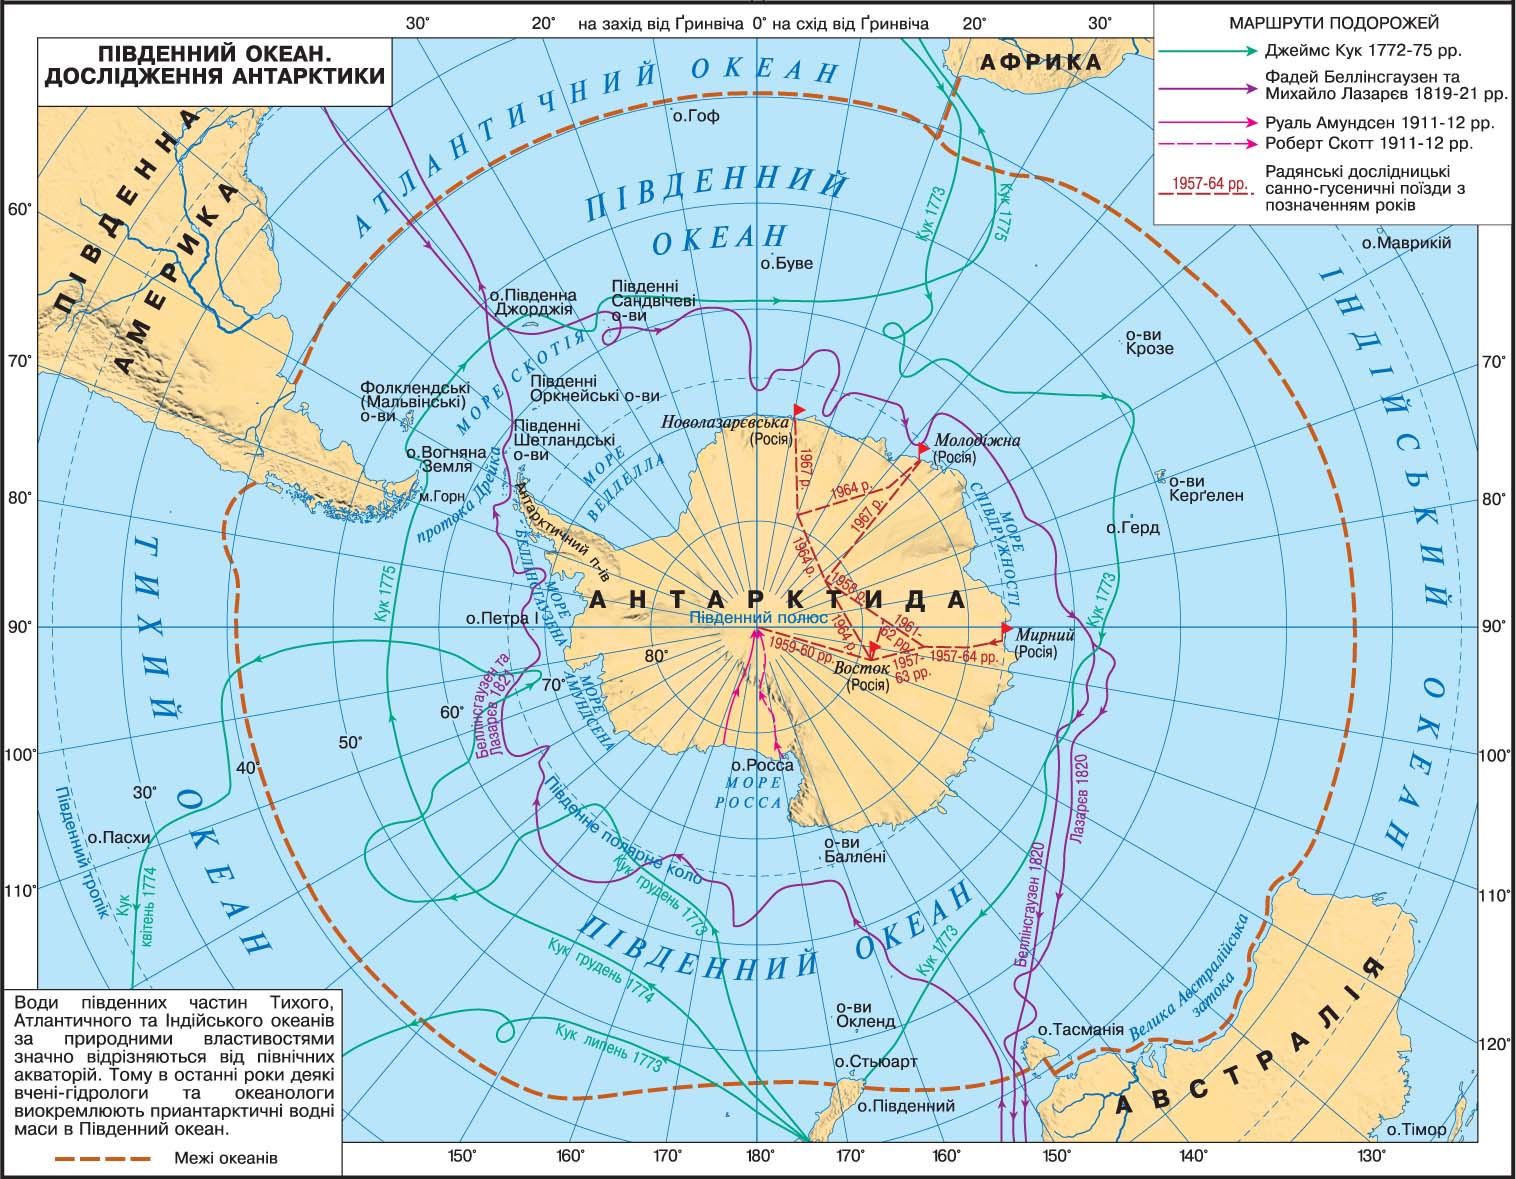 Материк омывается водами южного океана. Показать на карте Северный Ледовитый океан и Антарктиду. Границы Южного океана на карте. Физическая карта Антарктиды.